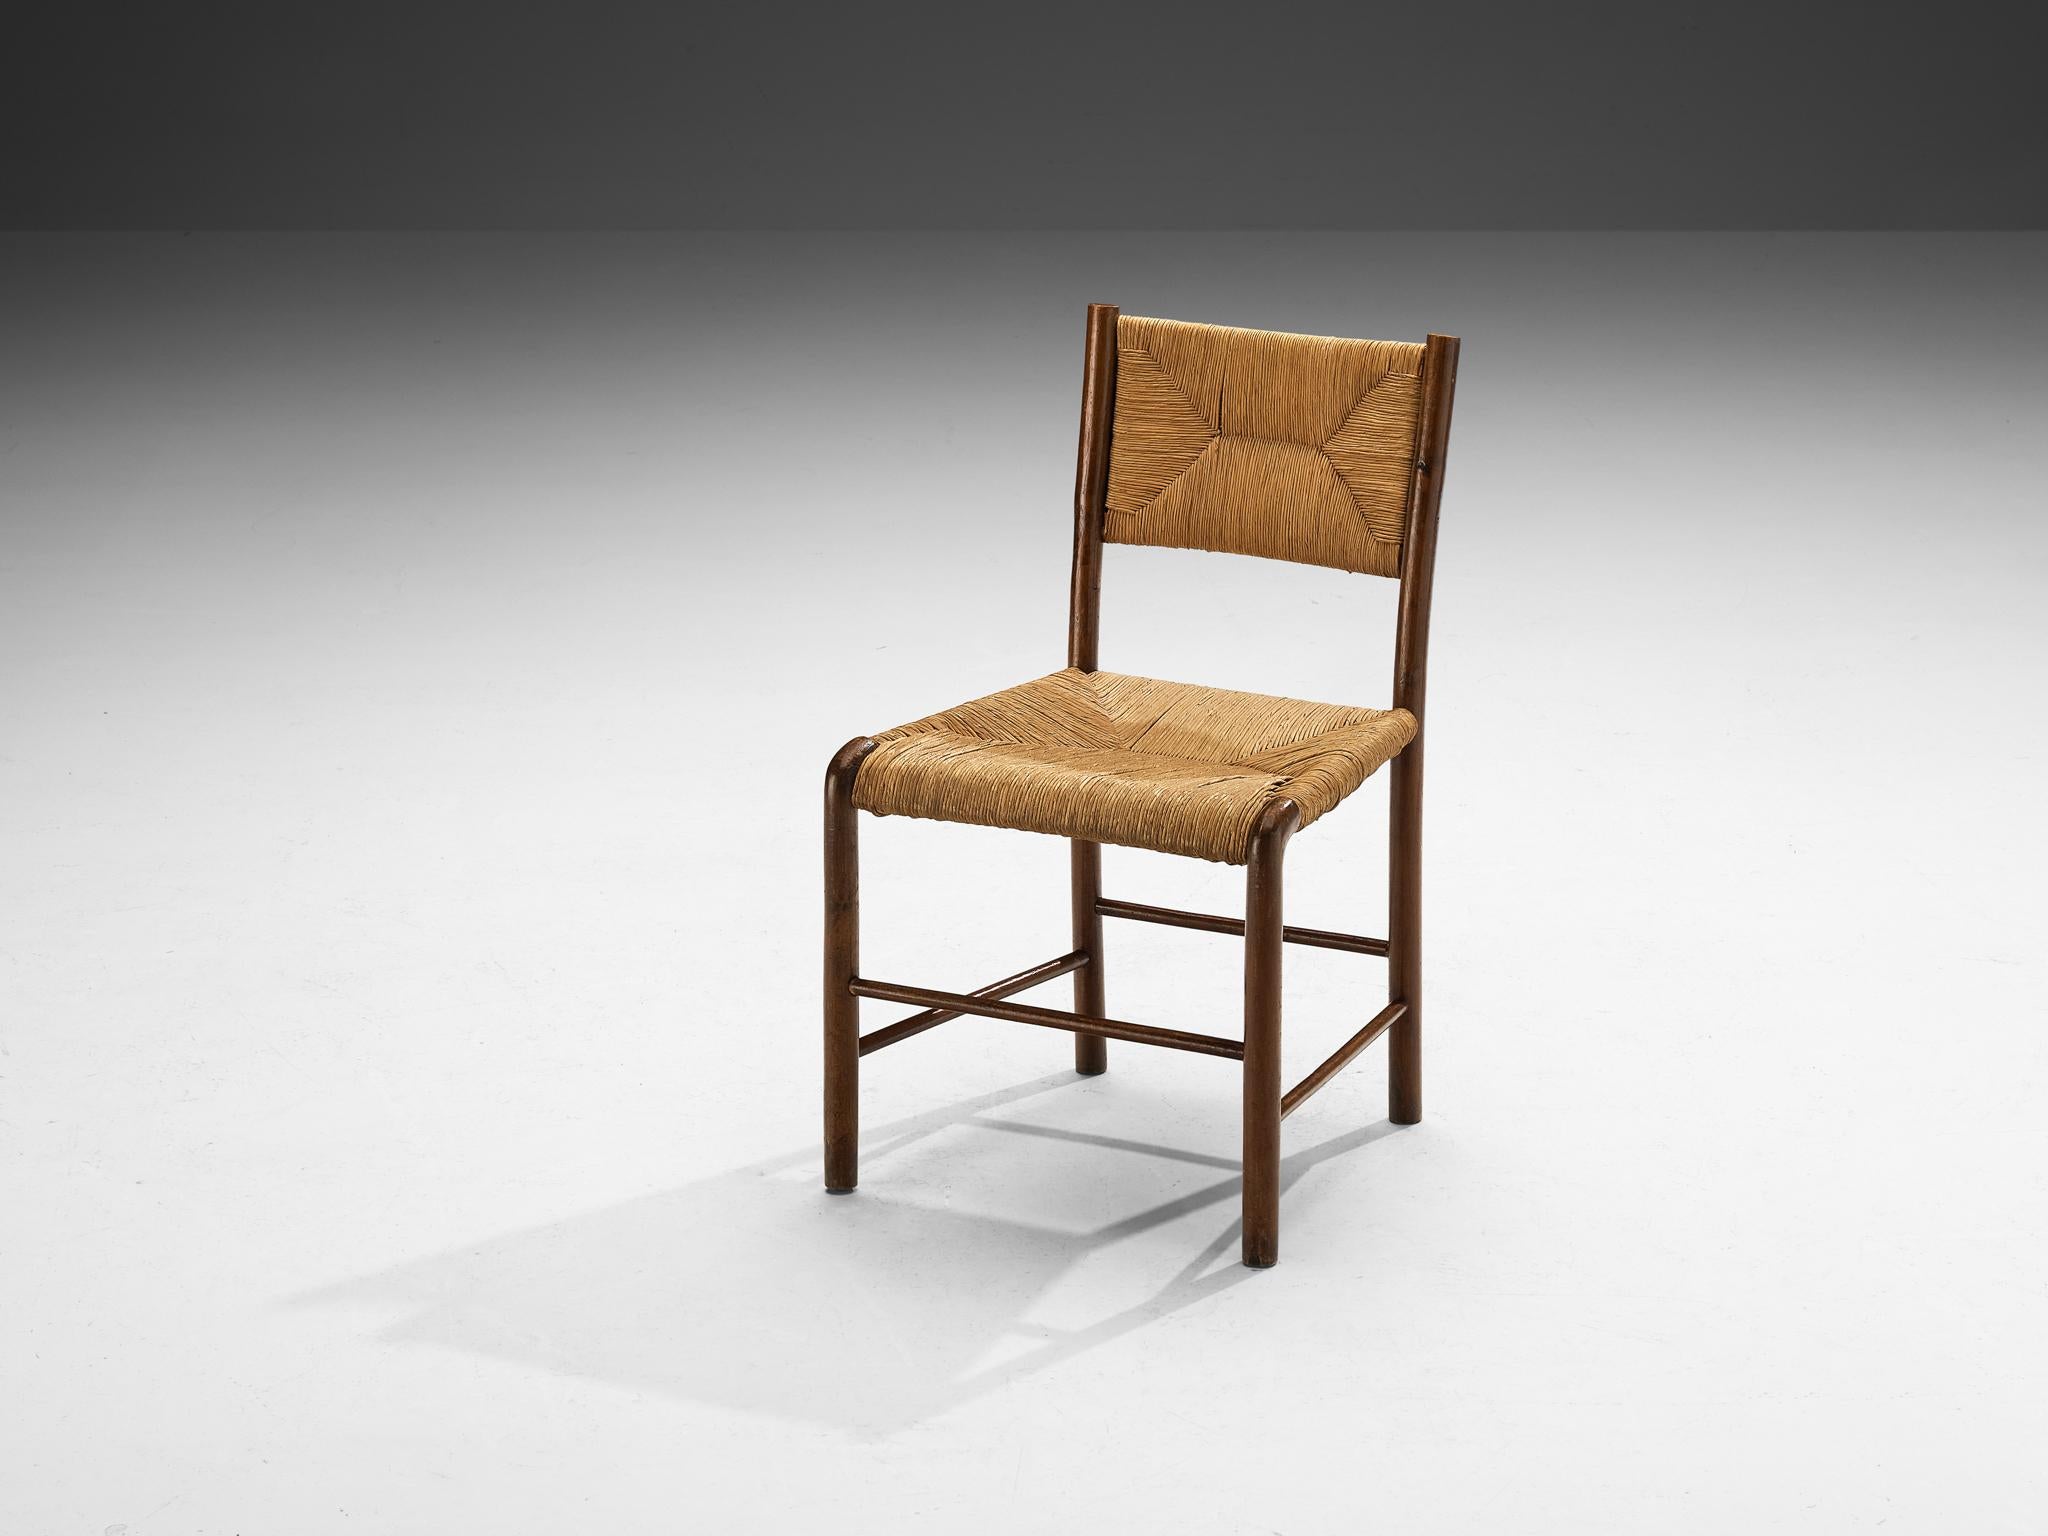 Emanuele Rambaldi pour Beeche, chaise, hêtre, paille, Chiavari, Italie, design 1933, production après

Le peintre et designer de meubles italien Emanuele Rambaldi (1903-1968) a créé cette charmante chaise. Le présent modèle a été publié pour la